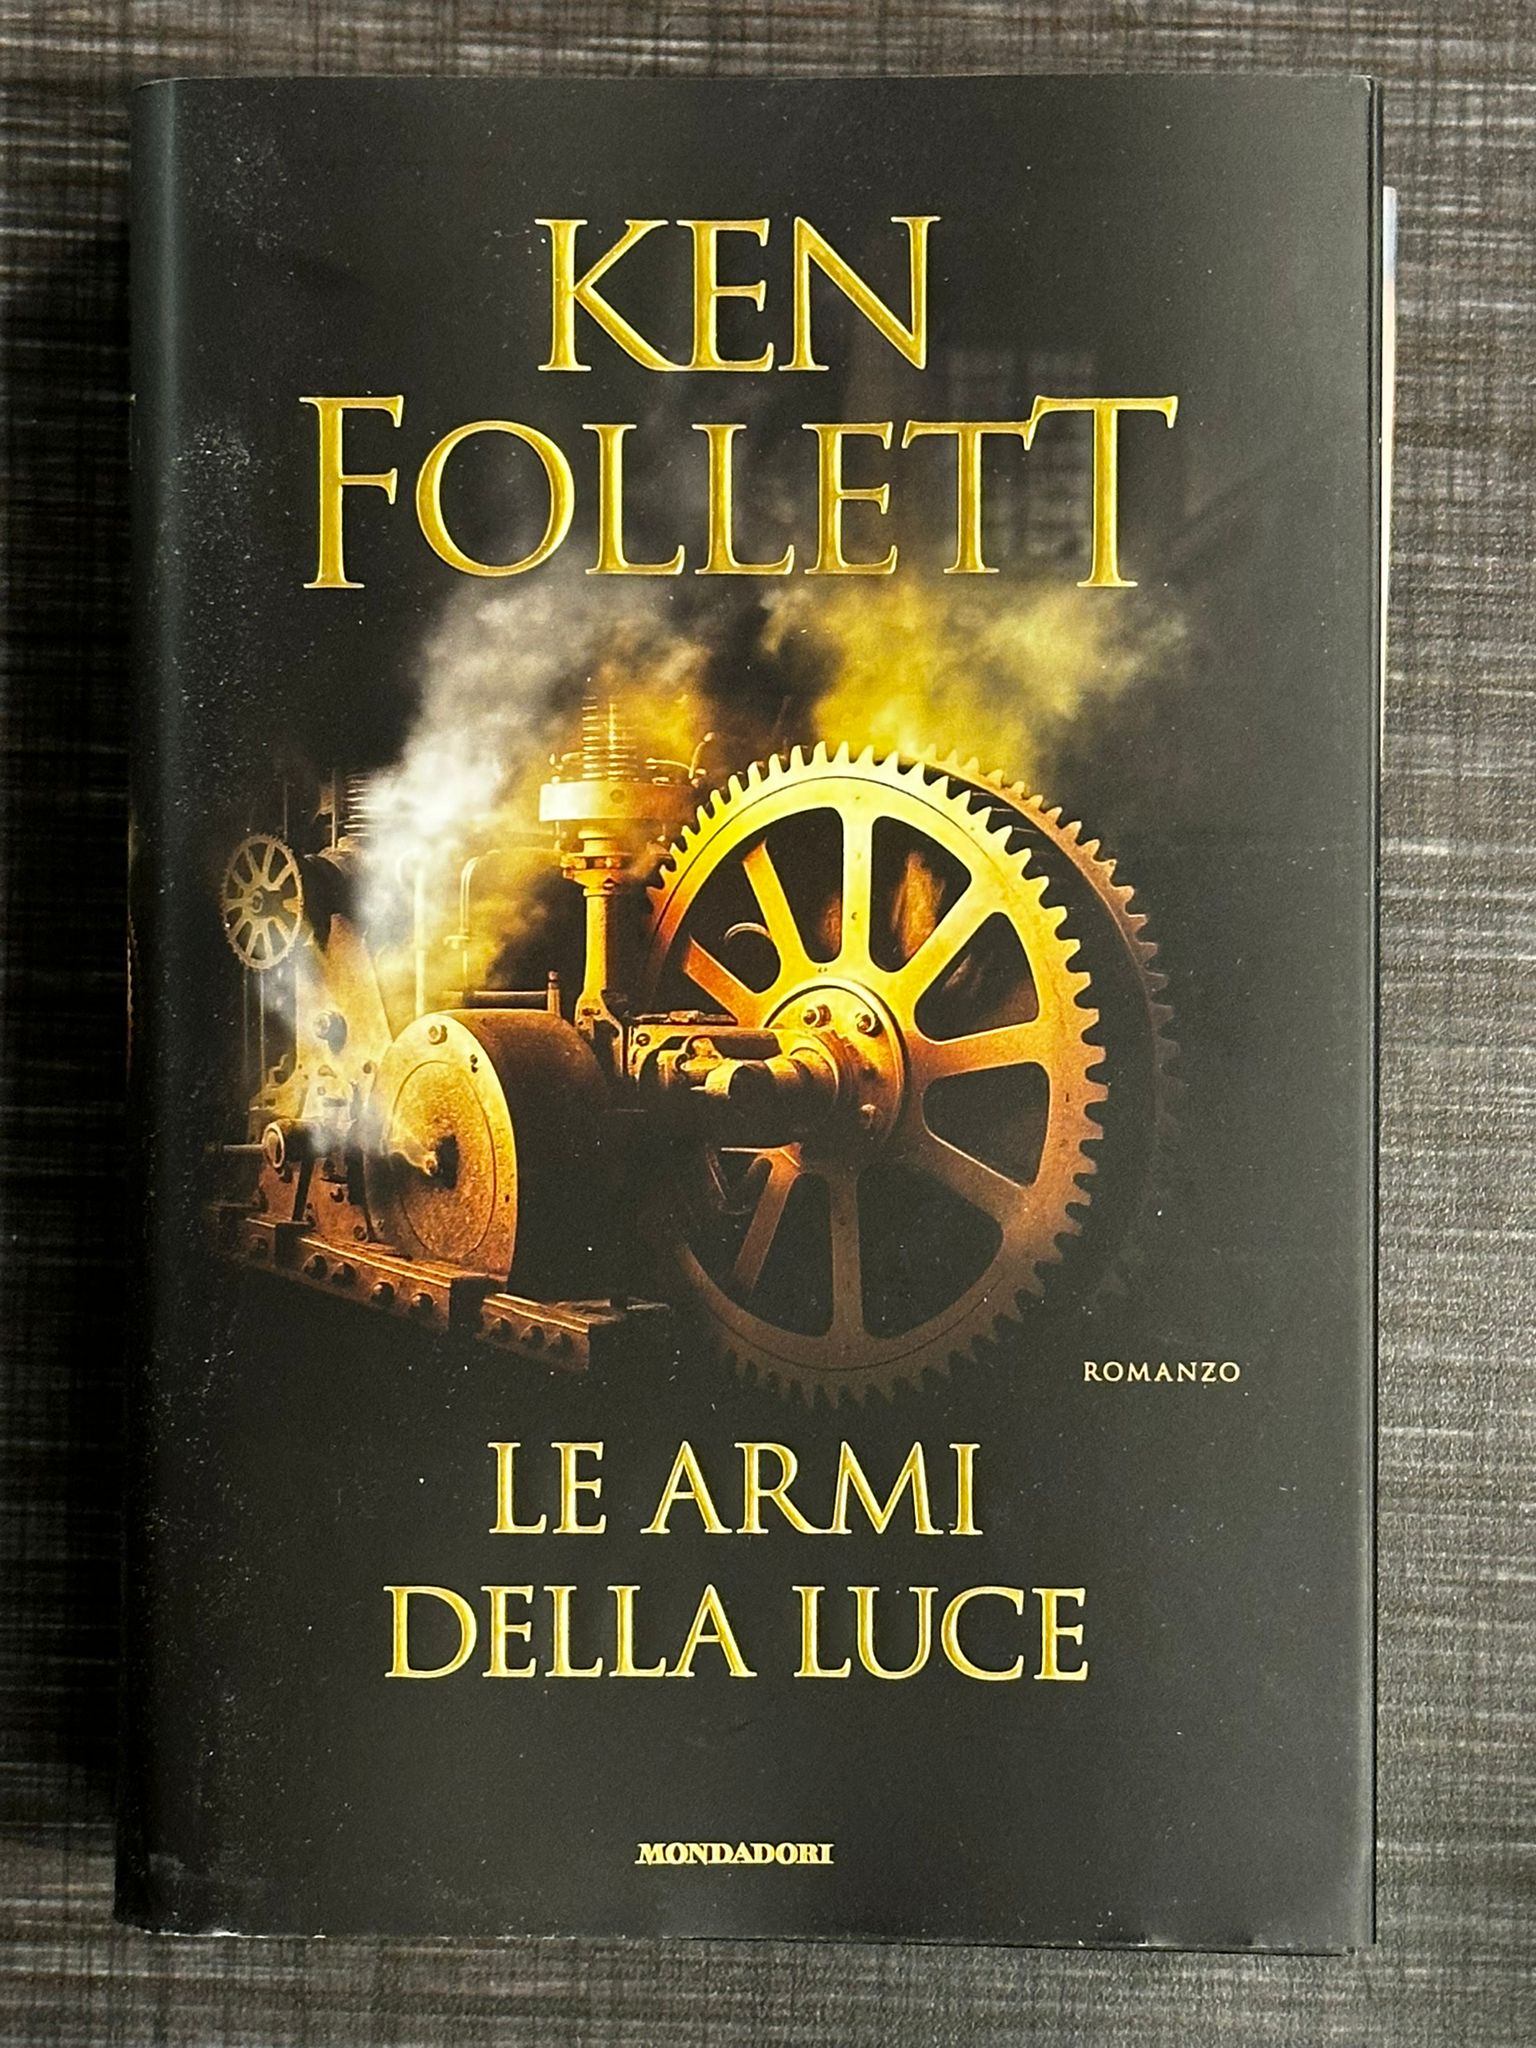 Le armi della luce di Ken Follett, il quinto capitolo della saga